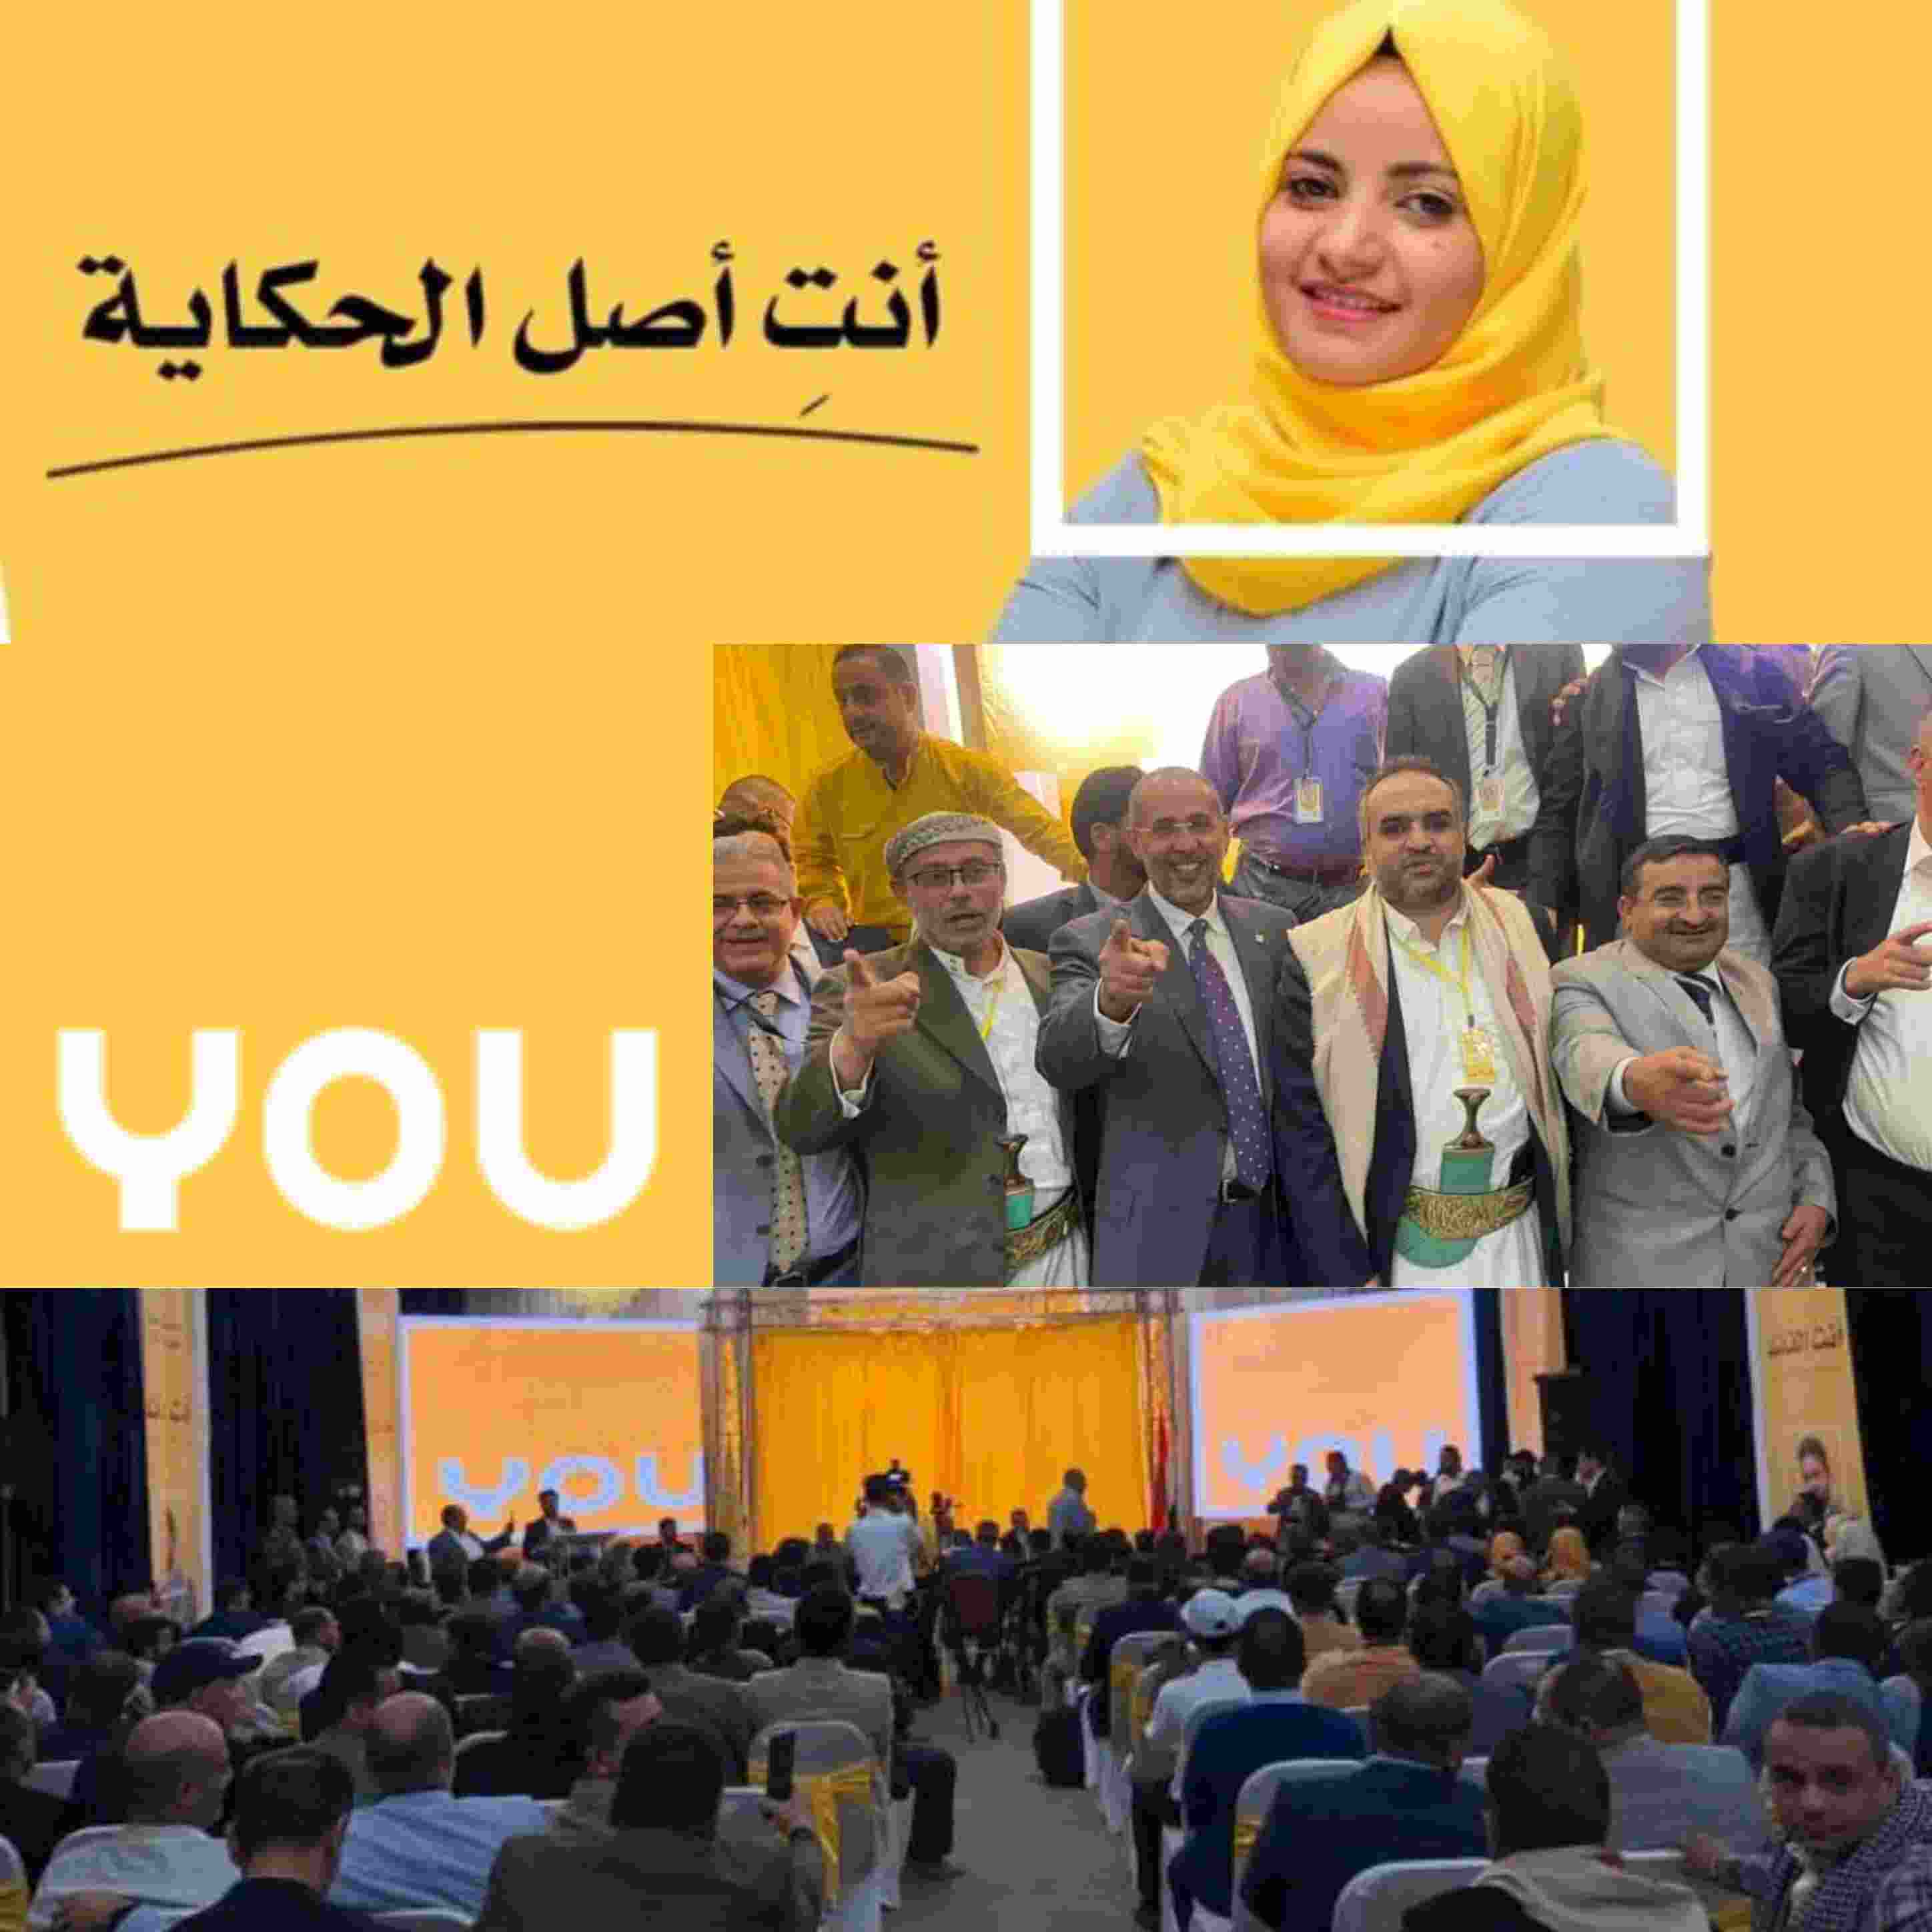 في مؤتمر صحفي .. اطلاق اسم العلامة التجارية لشركة You اليمنية العمانية للإتصالات بصنعاء ..!!